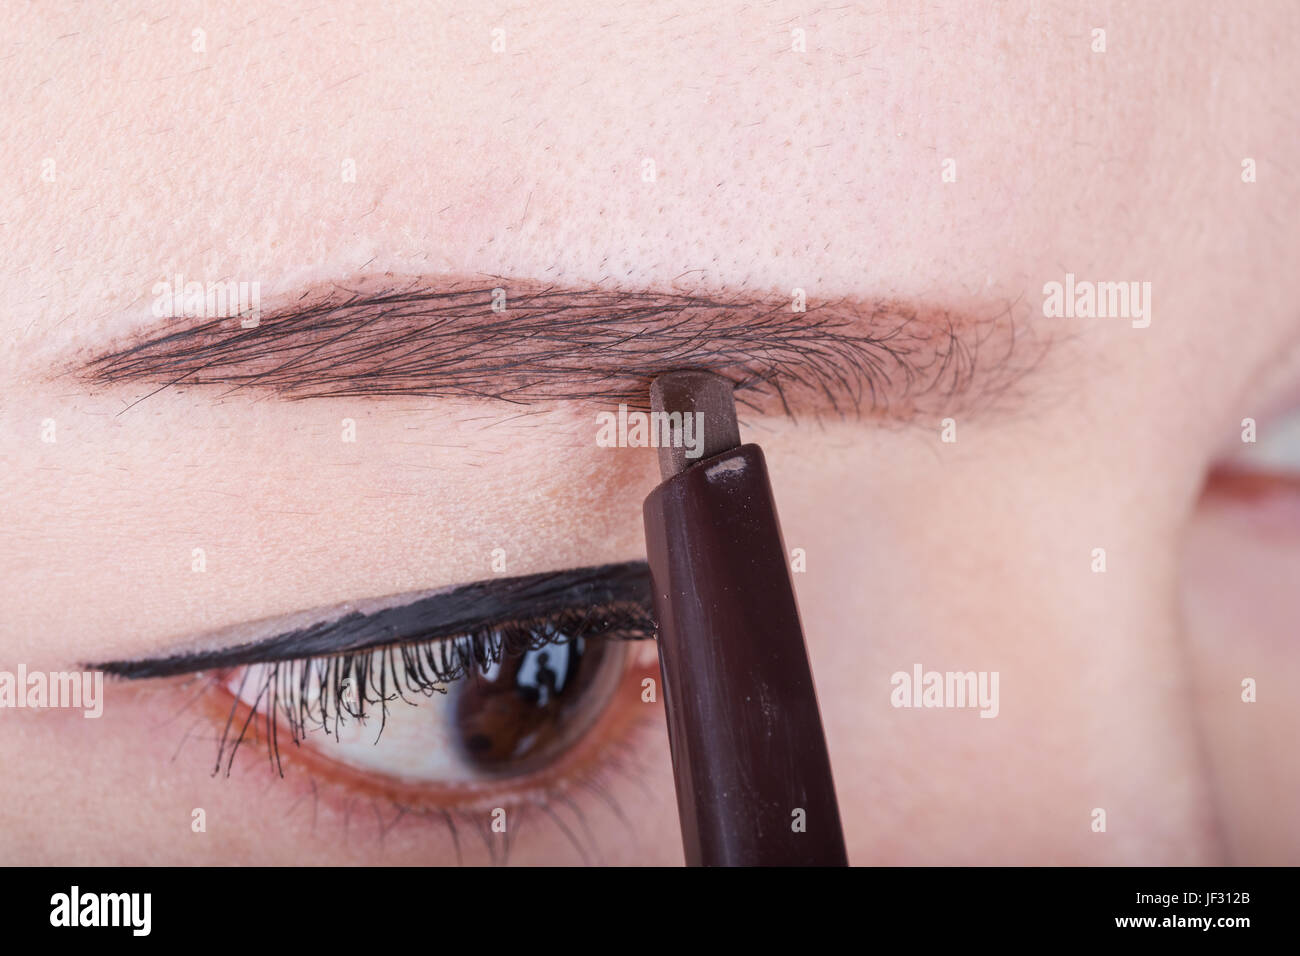 Close-up à l'aide de maquillage crayon sourcil femme Banque D'Images